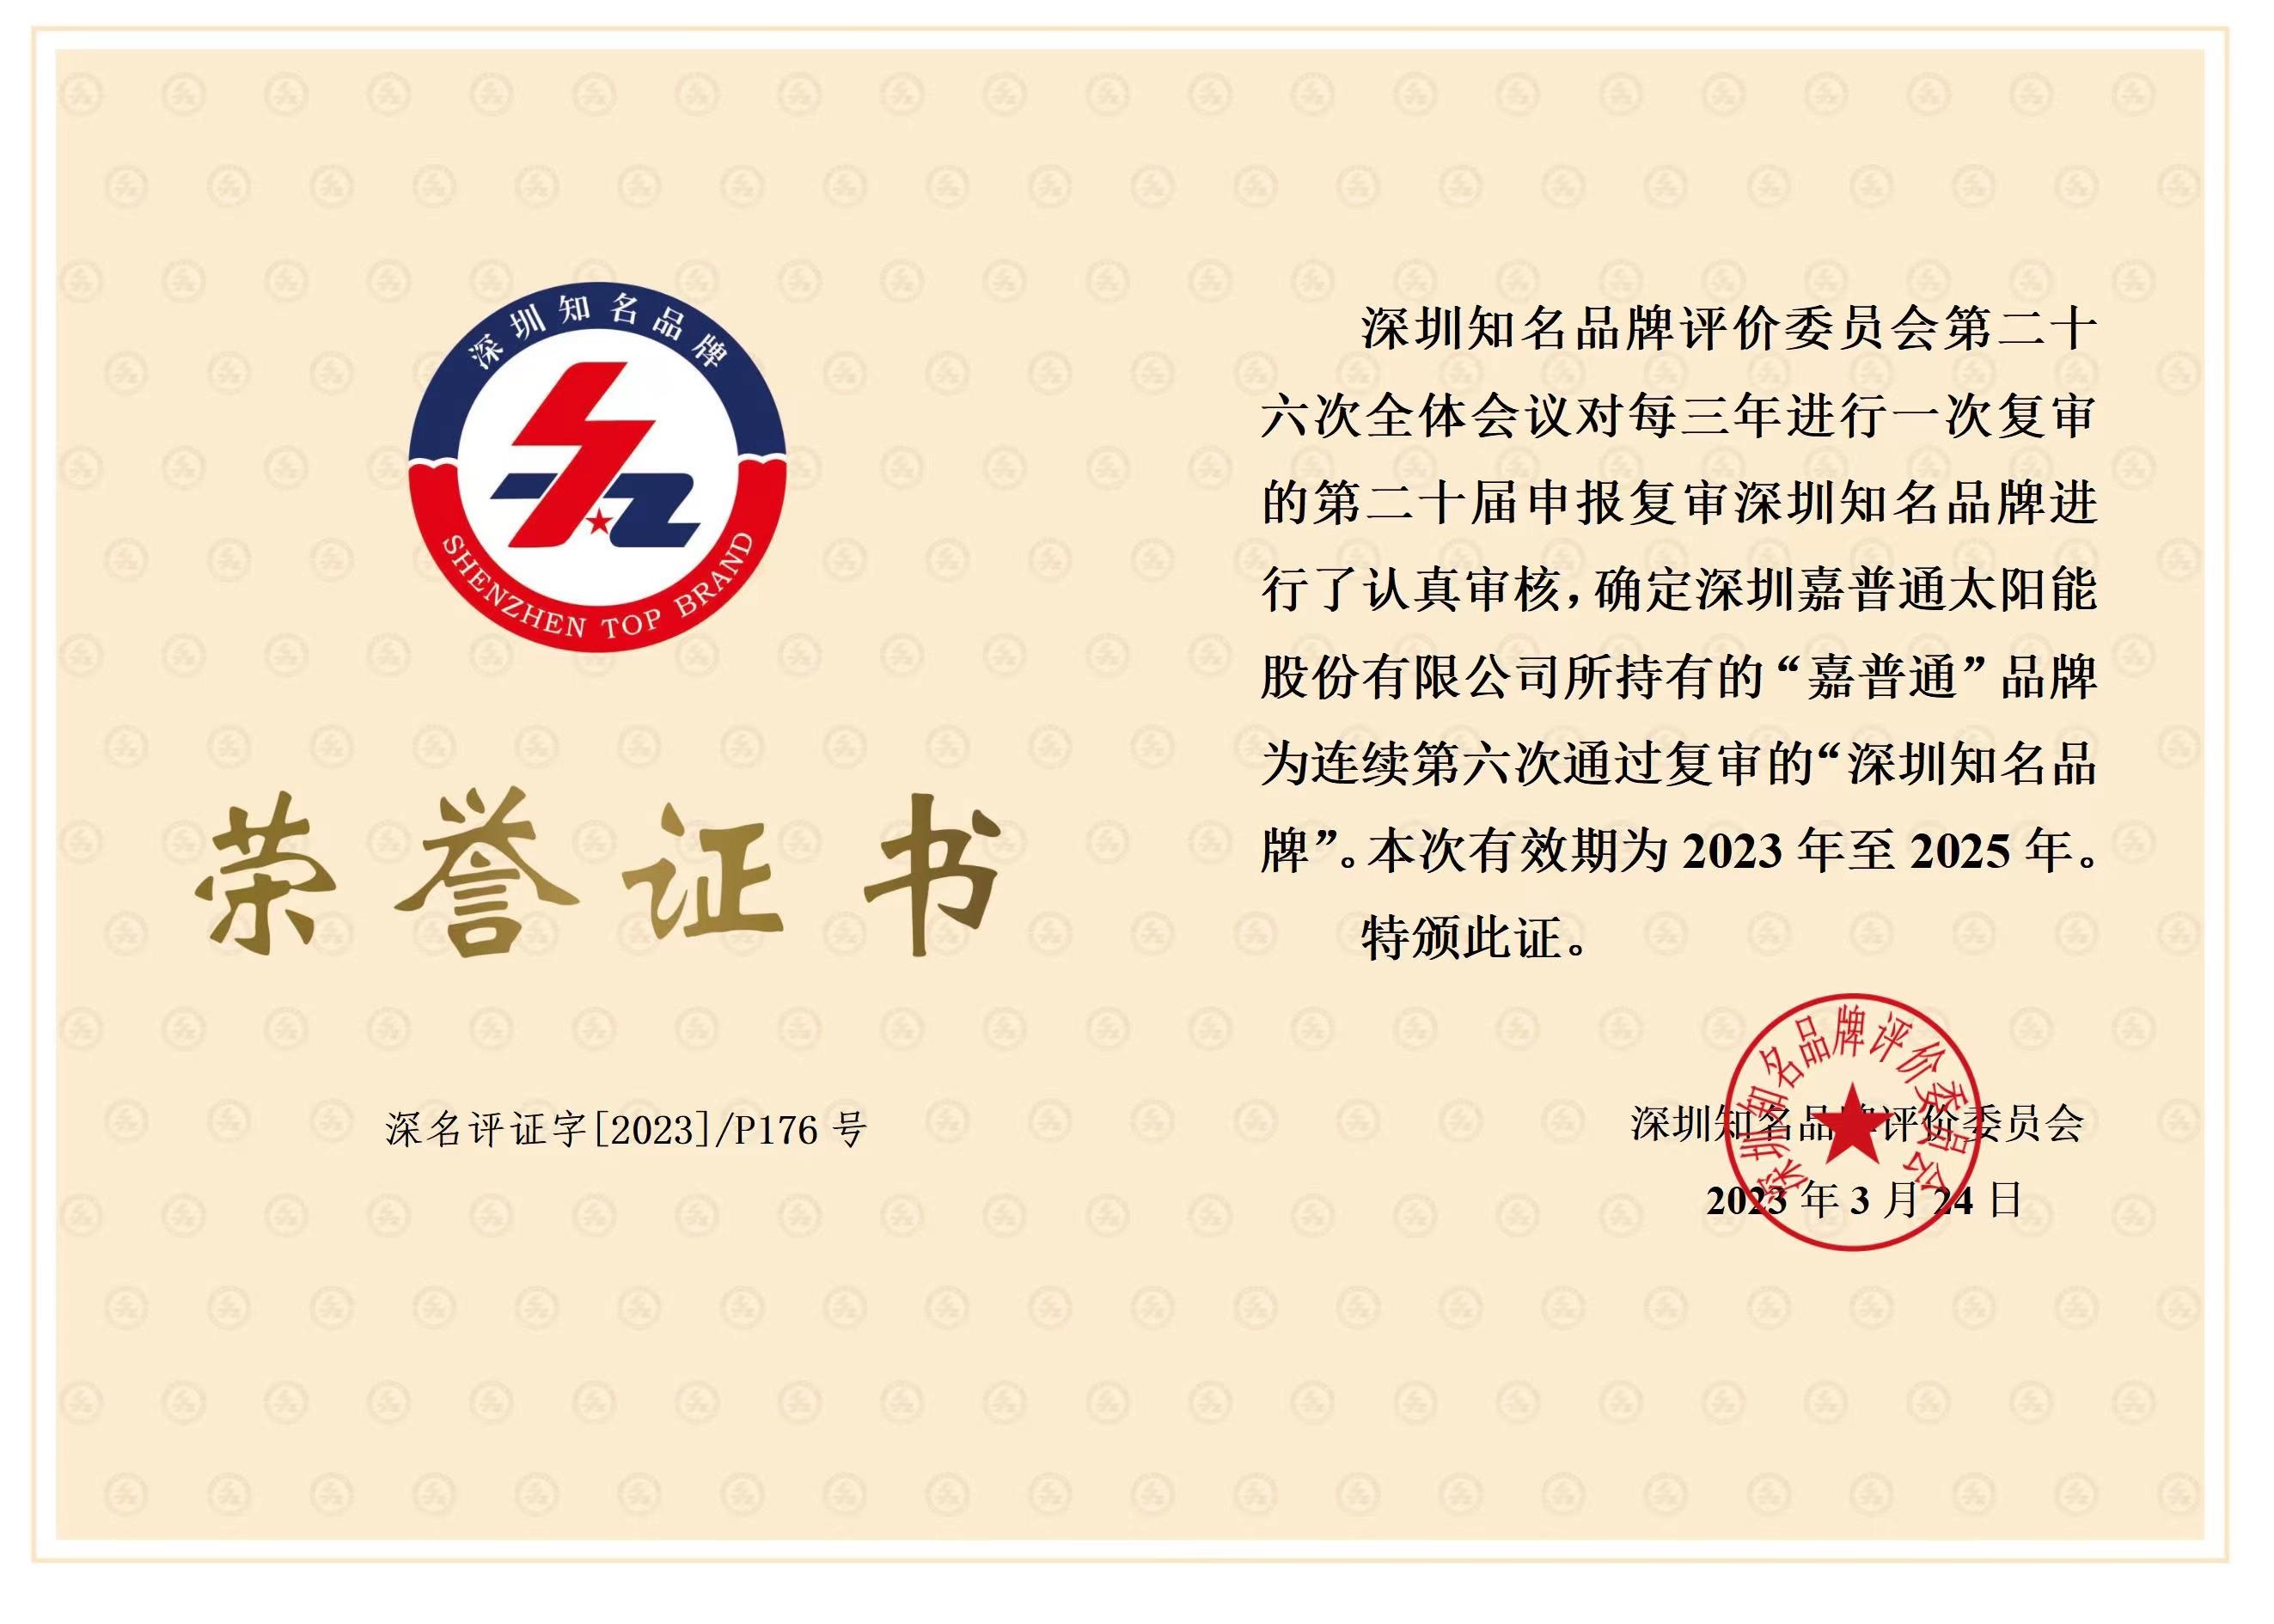 1.4 2023.3.24-2025.3.24深圳知名品牌荣誉证书连续六届